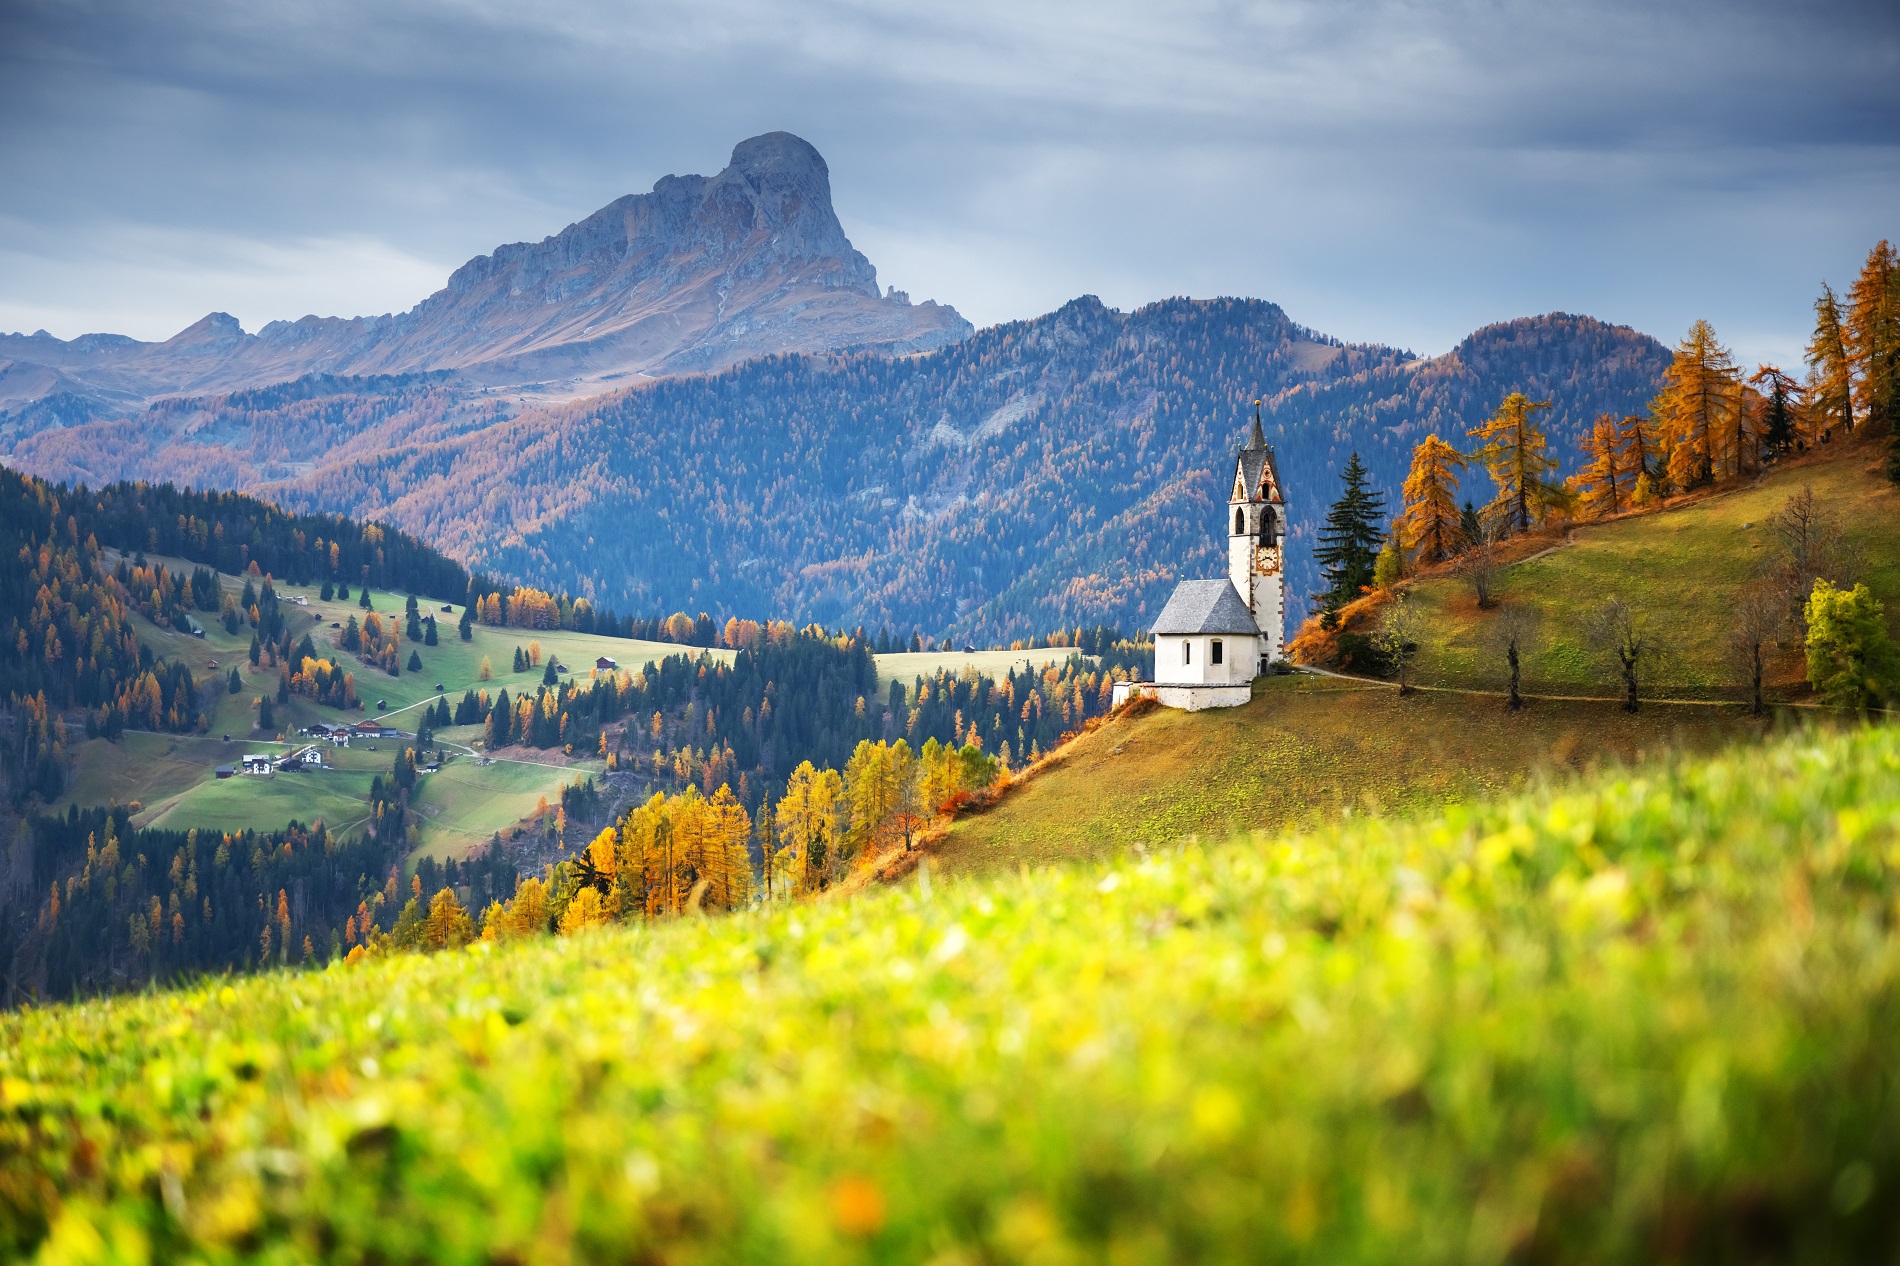 Dag 4 - Wandelen Zuid-Tiroler wijn- en weidepad